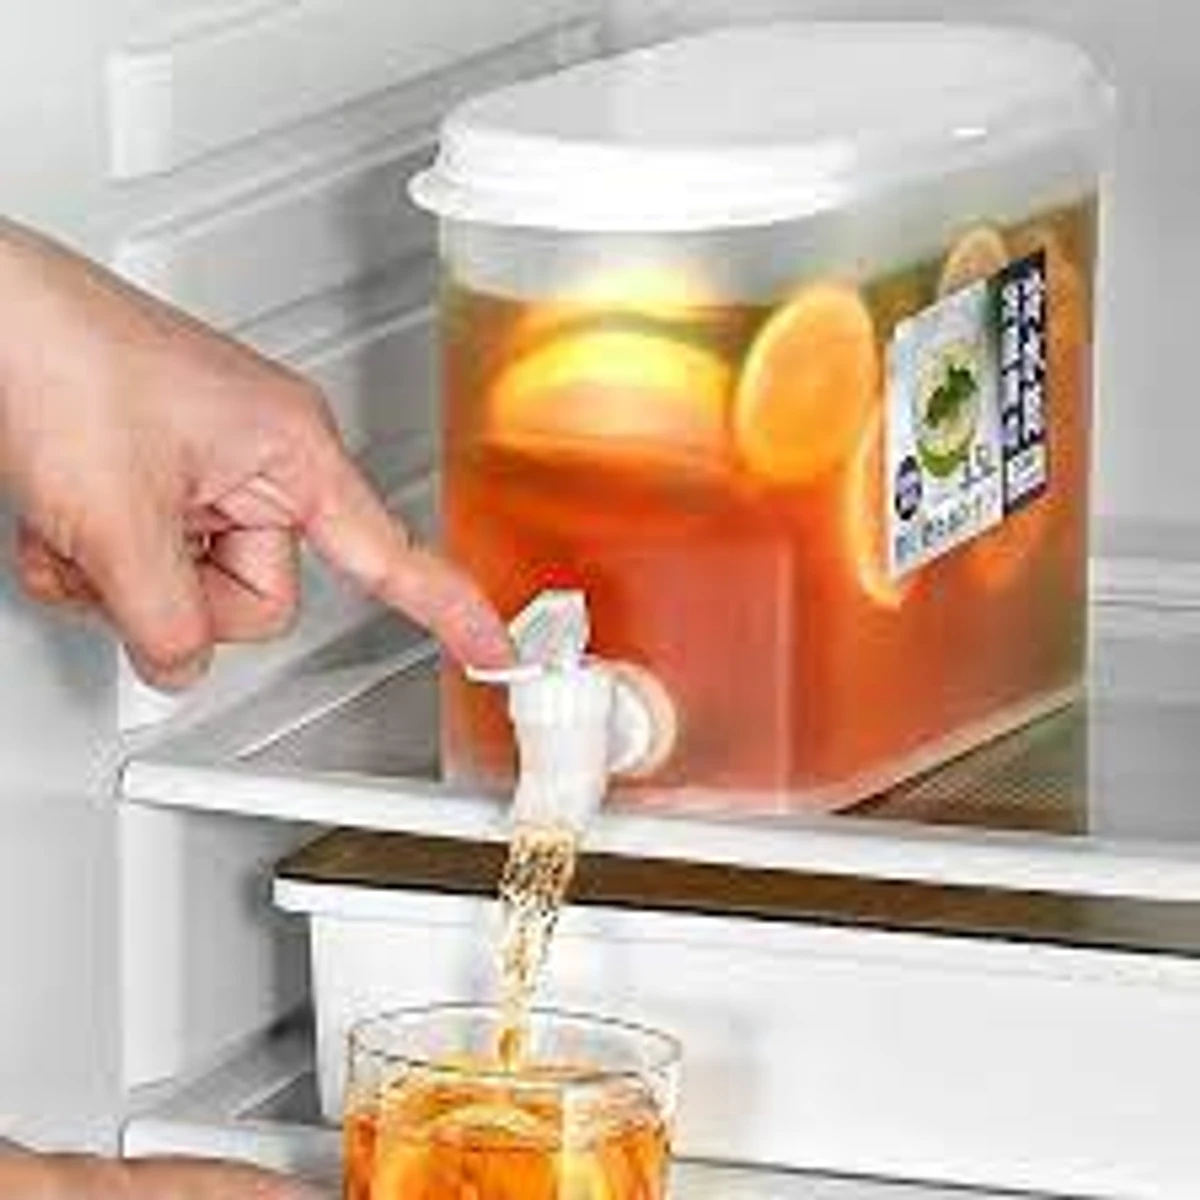 Drink Dispenser for Fridge, Plastic Water Jug Fruit Teapot Lemonade Bucket Drink Container for Fridge, 3.5L/1 Gallon